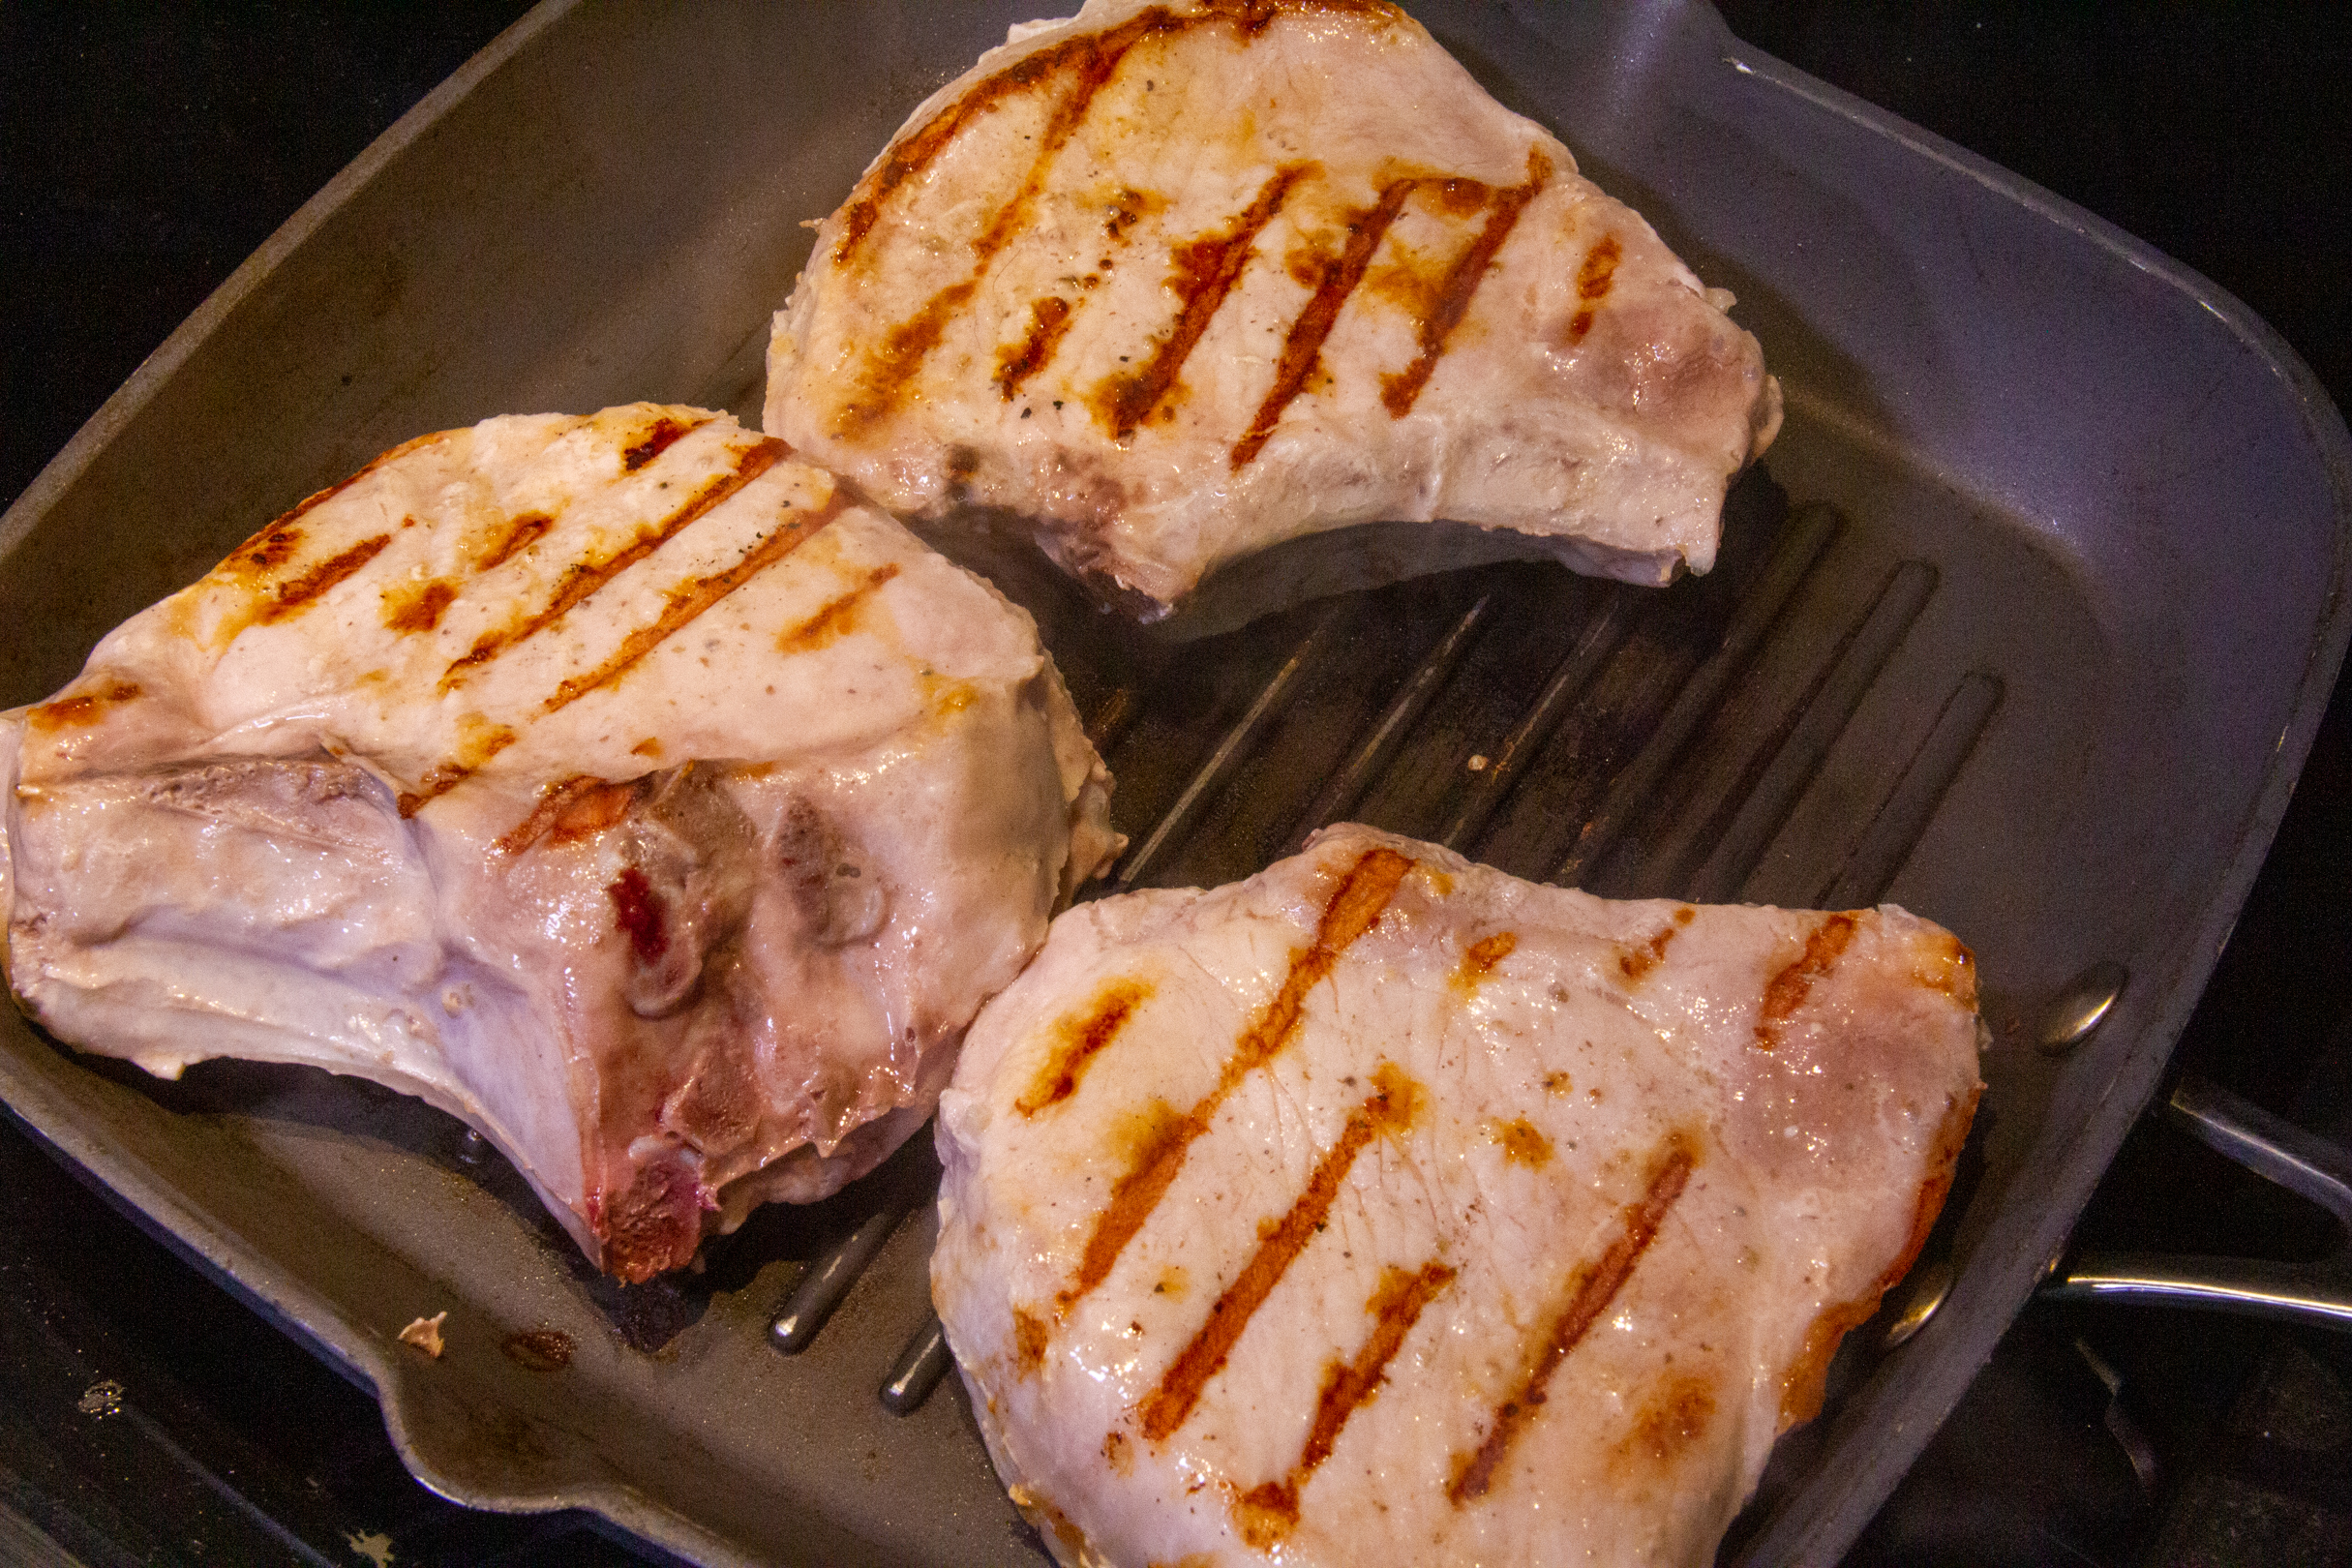 Porc cuisson basse température - La recette facile par Toqués 2 Cuisine